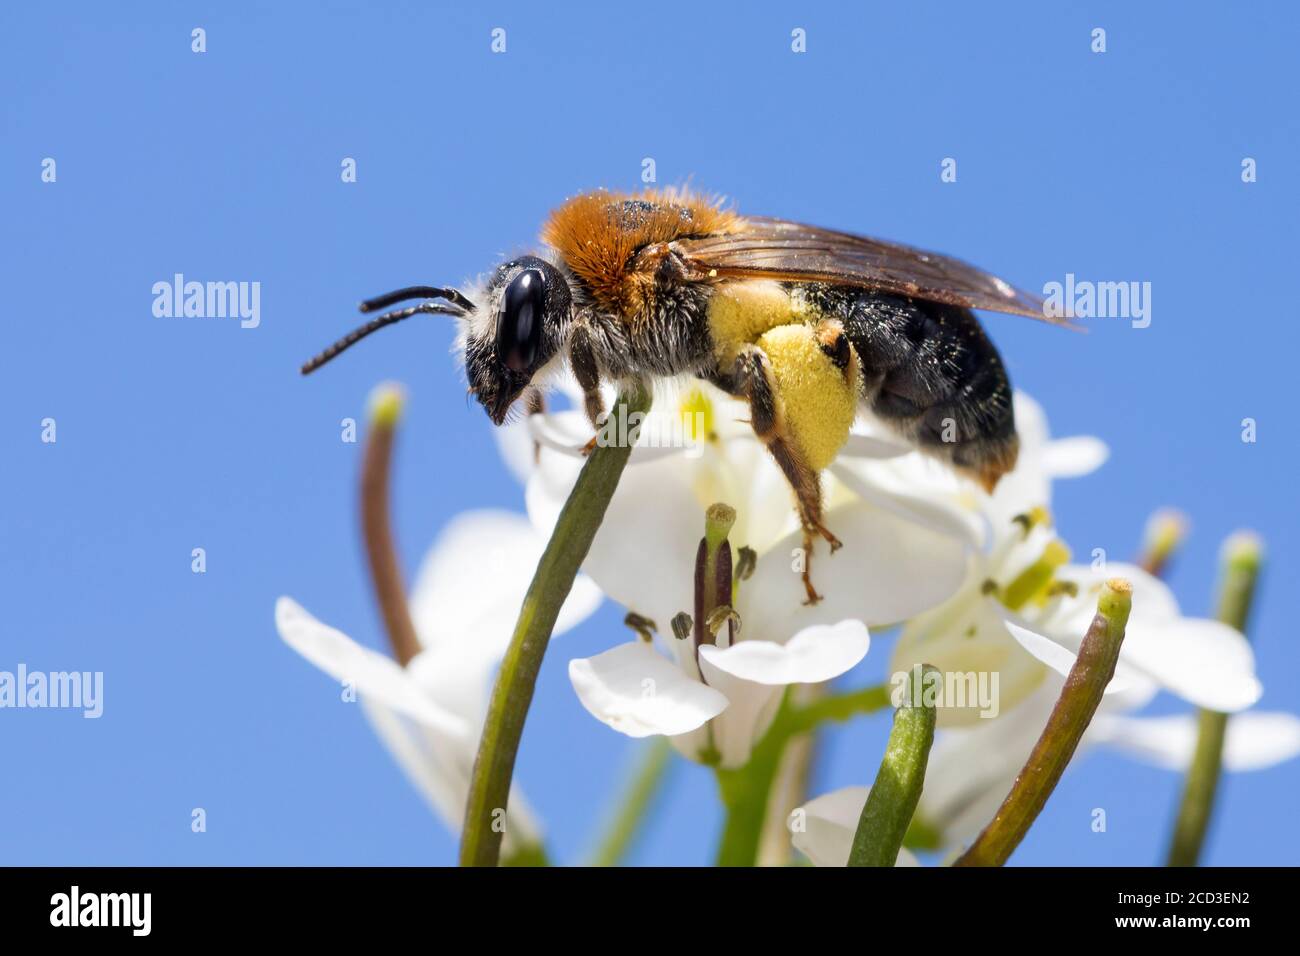 Bergbaubiene (Andrena haemorrhoe, Andrena albicans), weiblich, Blütenbesuch bei Knoblauchsenf, Deutschland Stockfoto